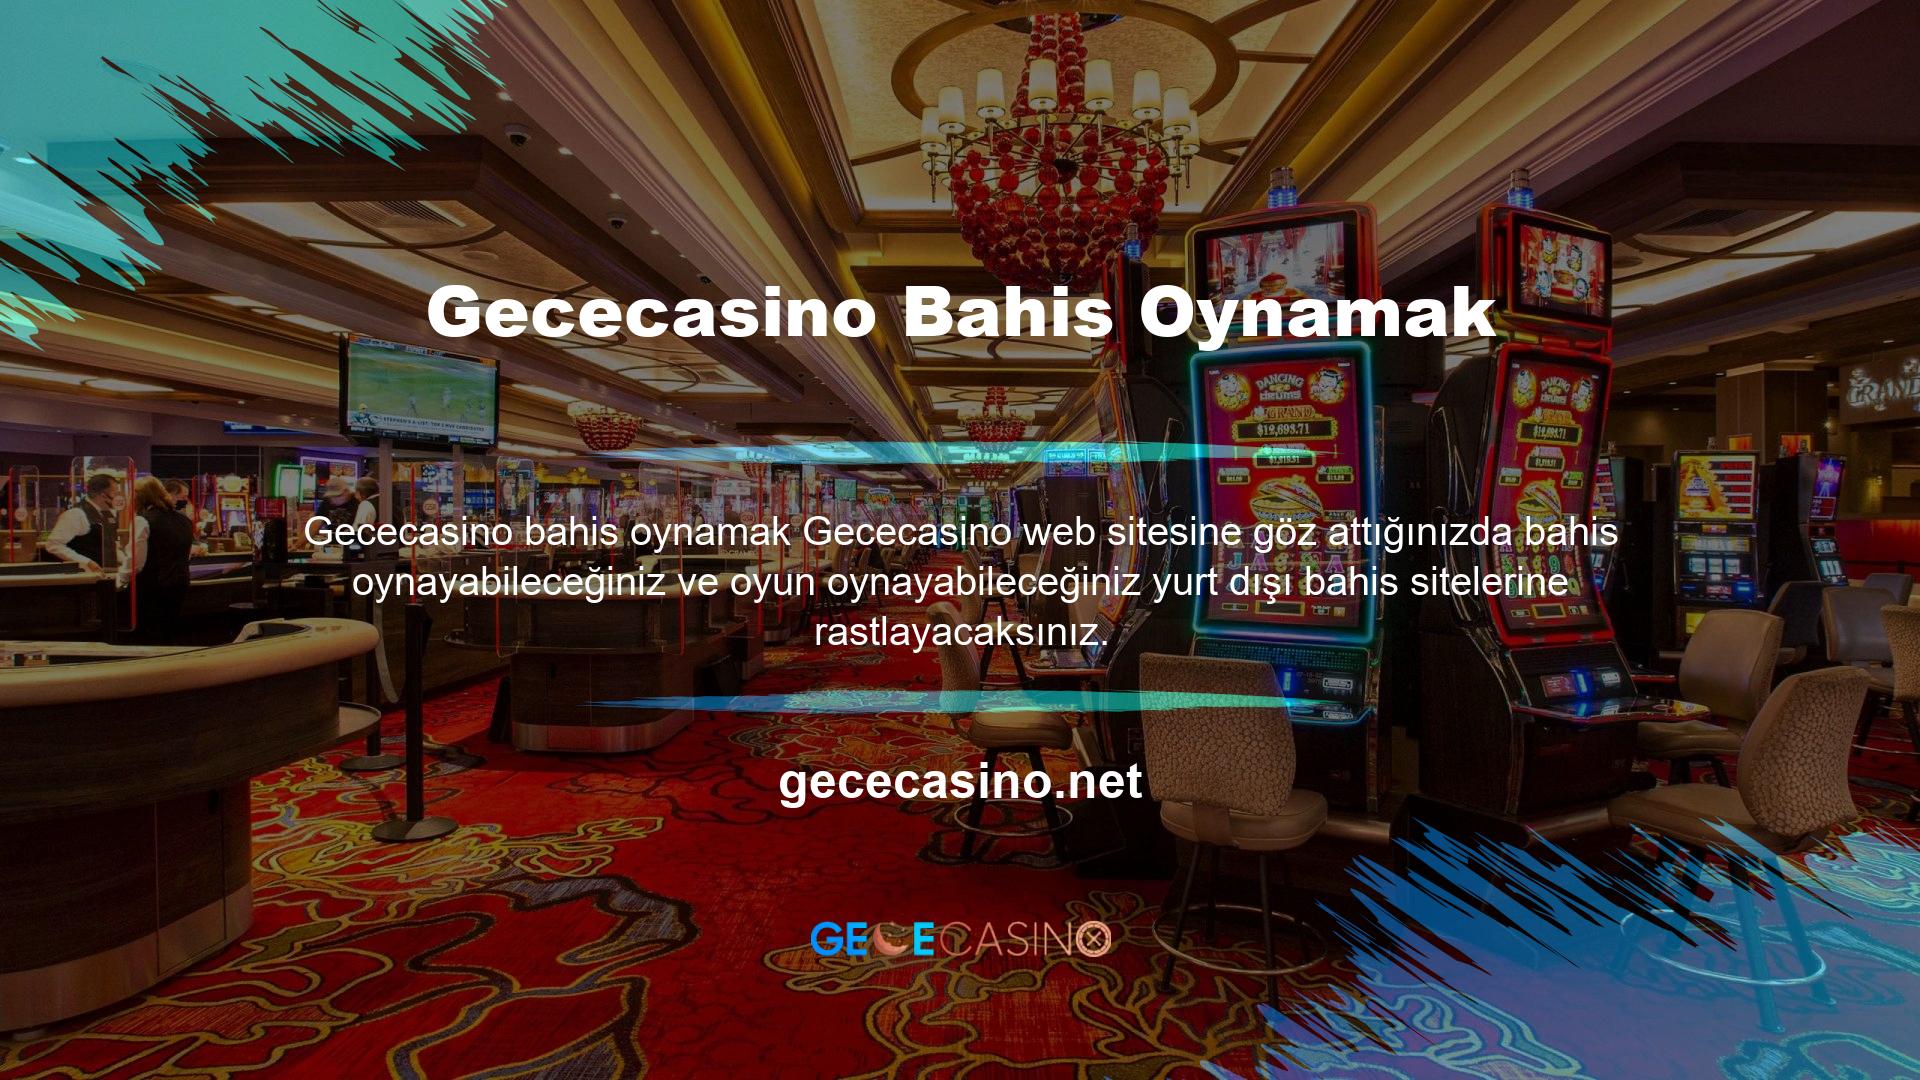 Üyelik Sadece bahis bölümünün değil, canlı casino oyunları, sanal sporlar ve slotlar gibi diğer bölümleri de sunan bir Türk web sitesidir